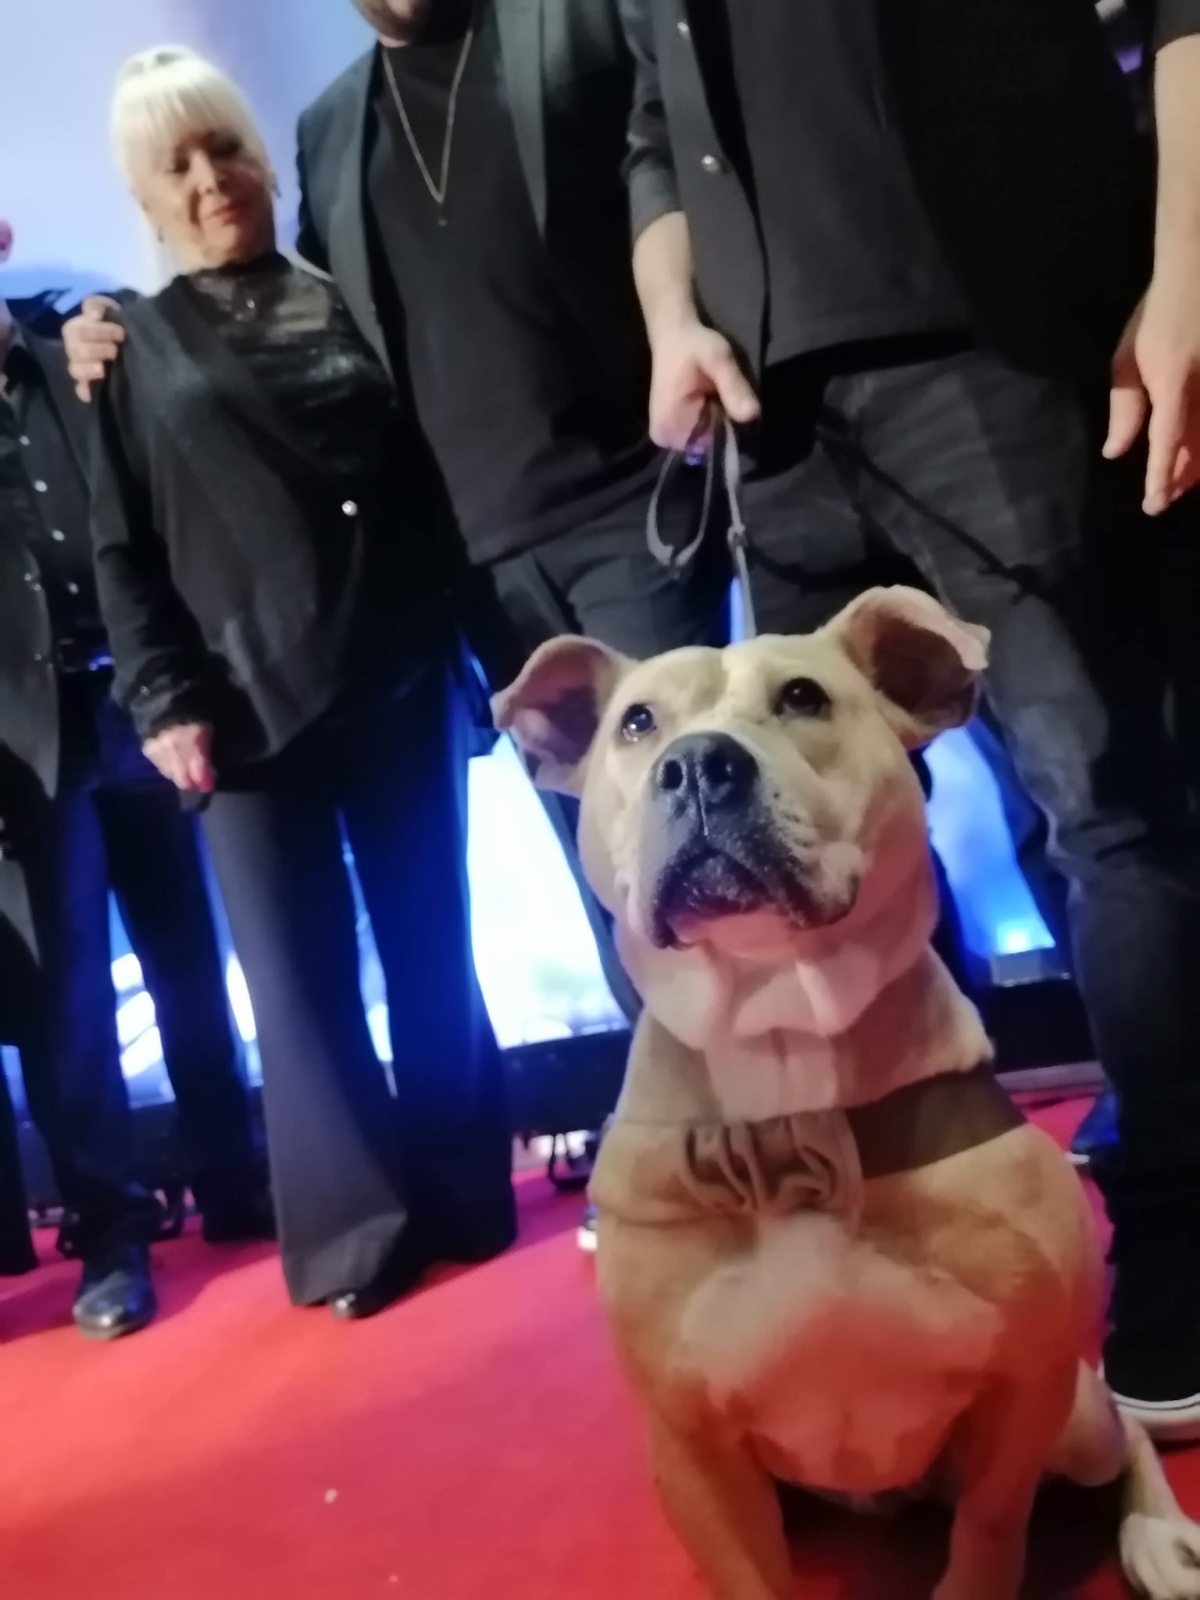 Dikkat Köpek Var; Film Galasından Görüntüler